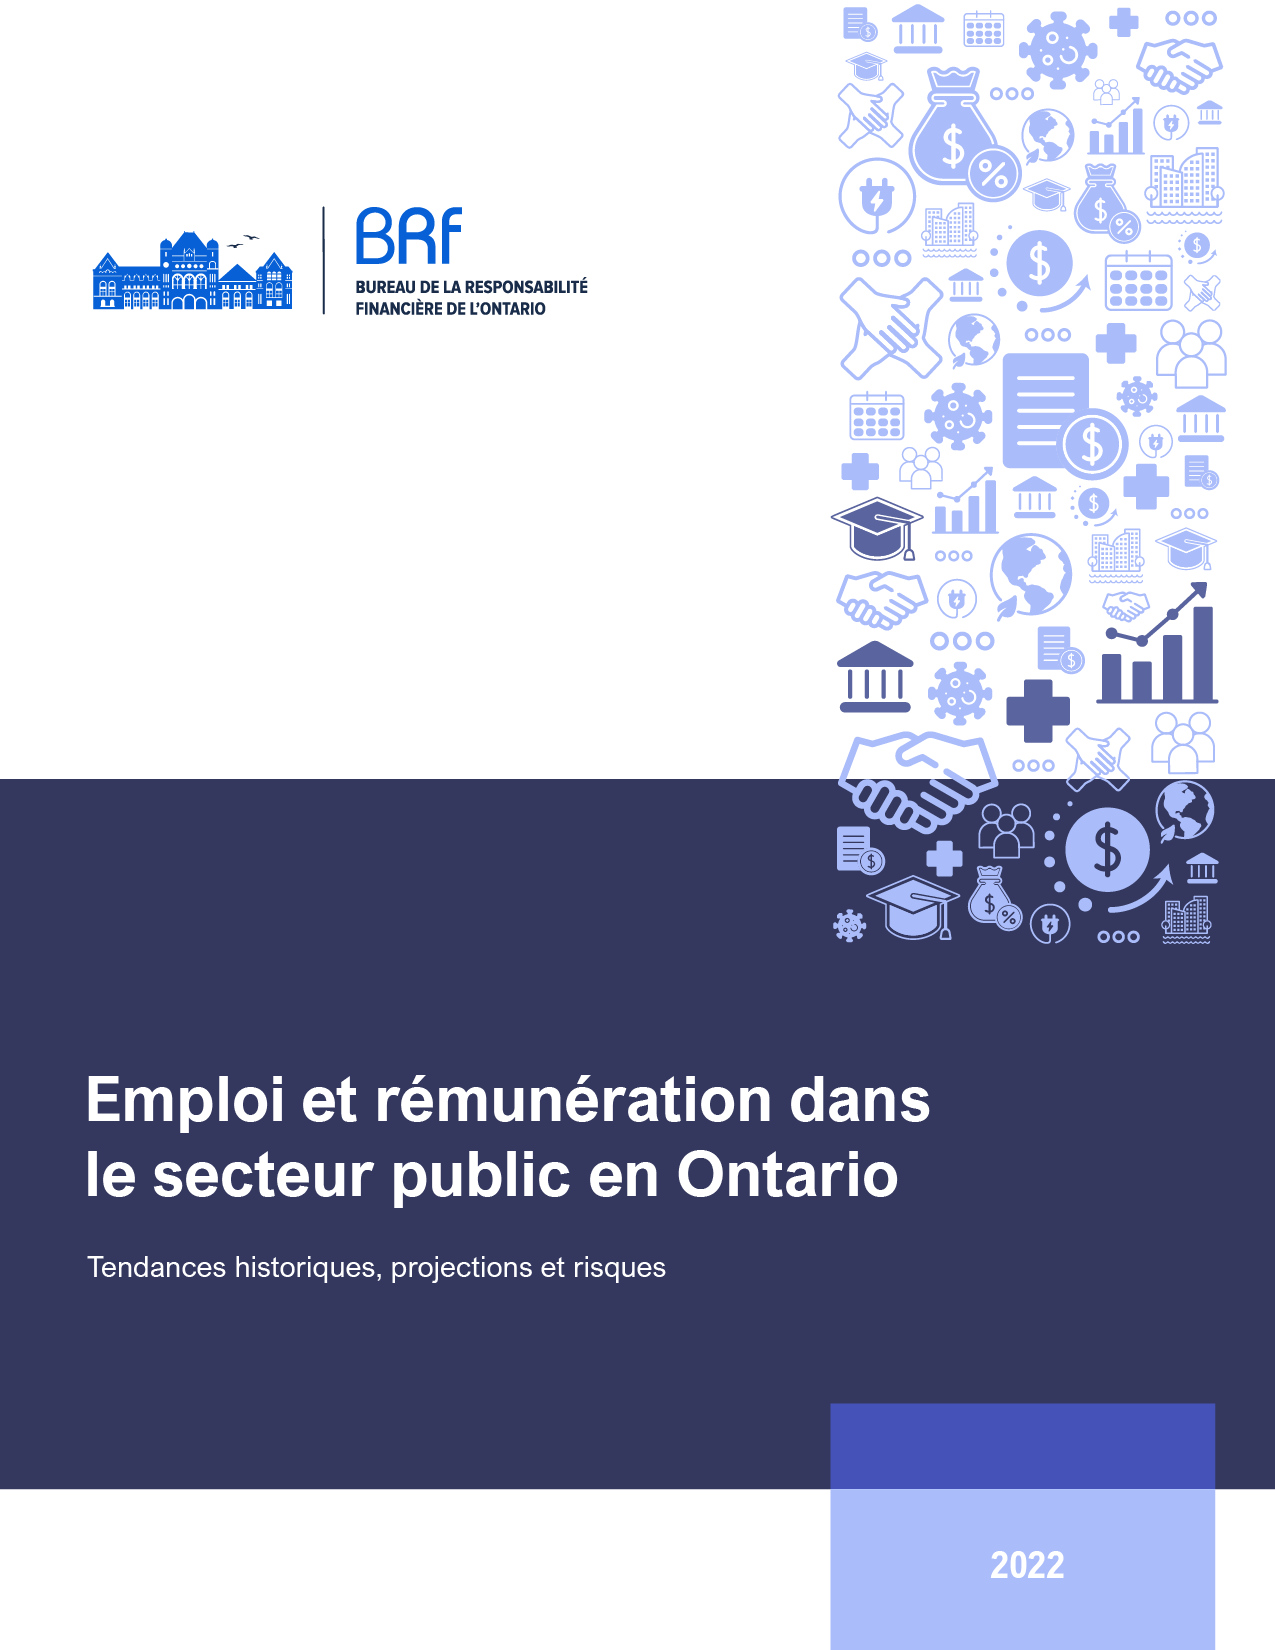 Emploi et rémunération dans le secteur public en Ontario